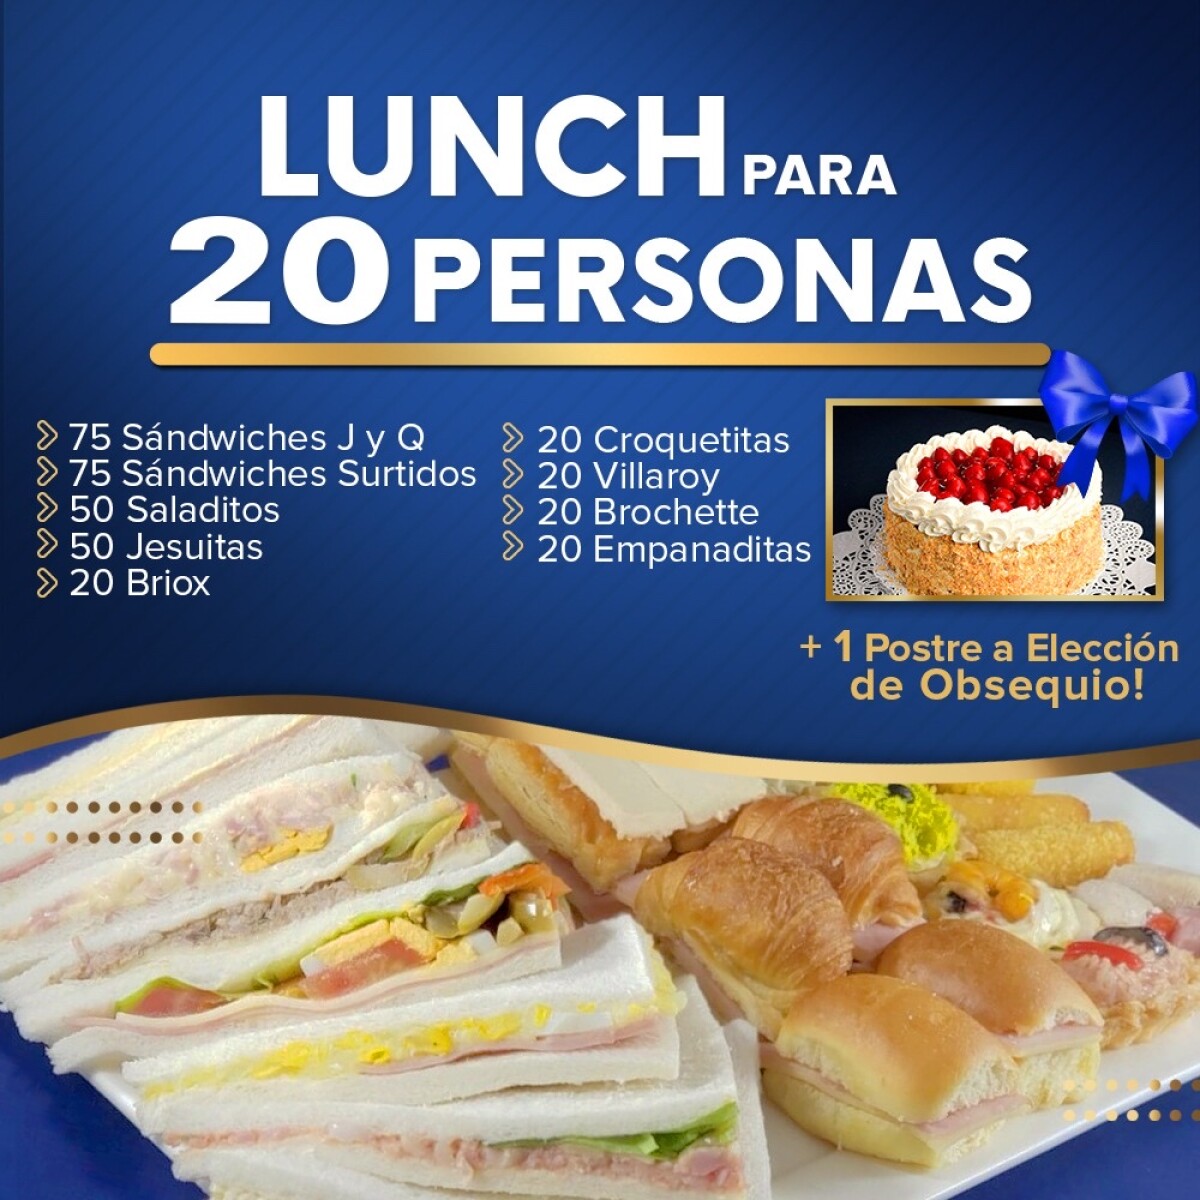 Lunch para 20 personas 